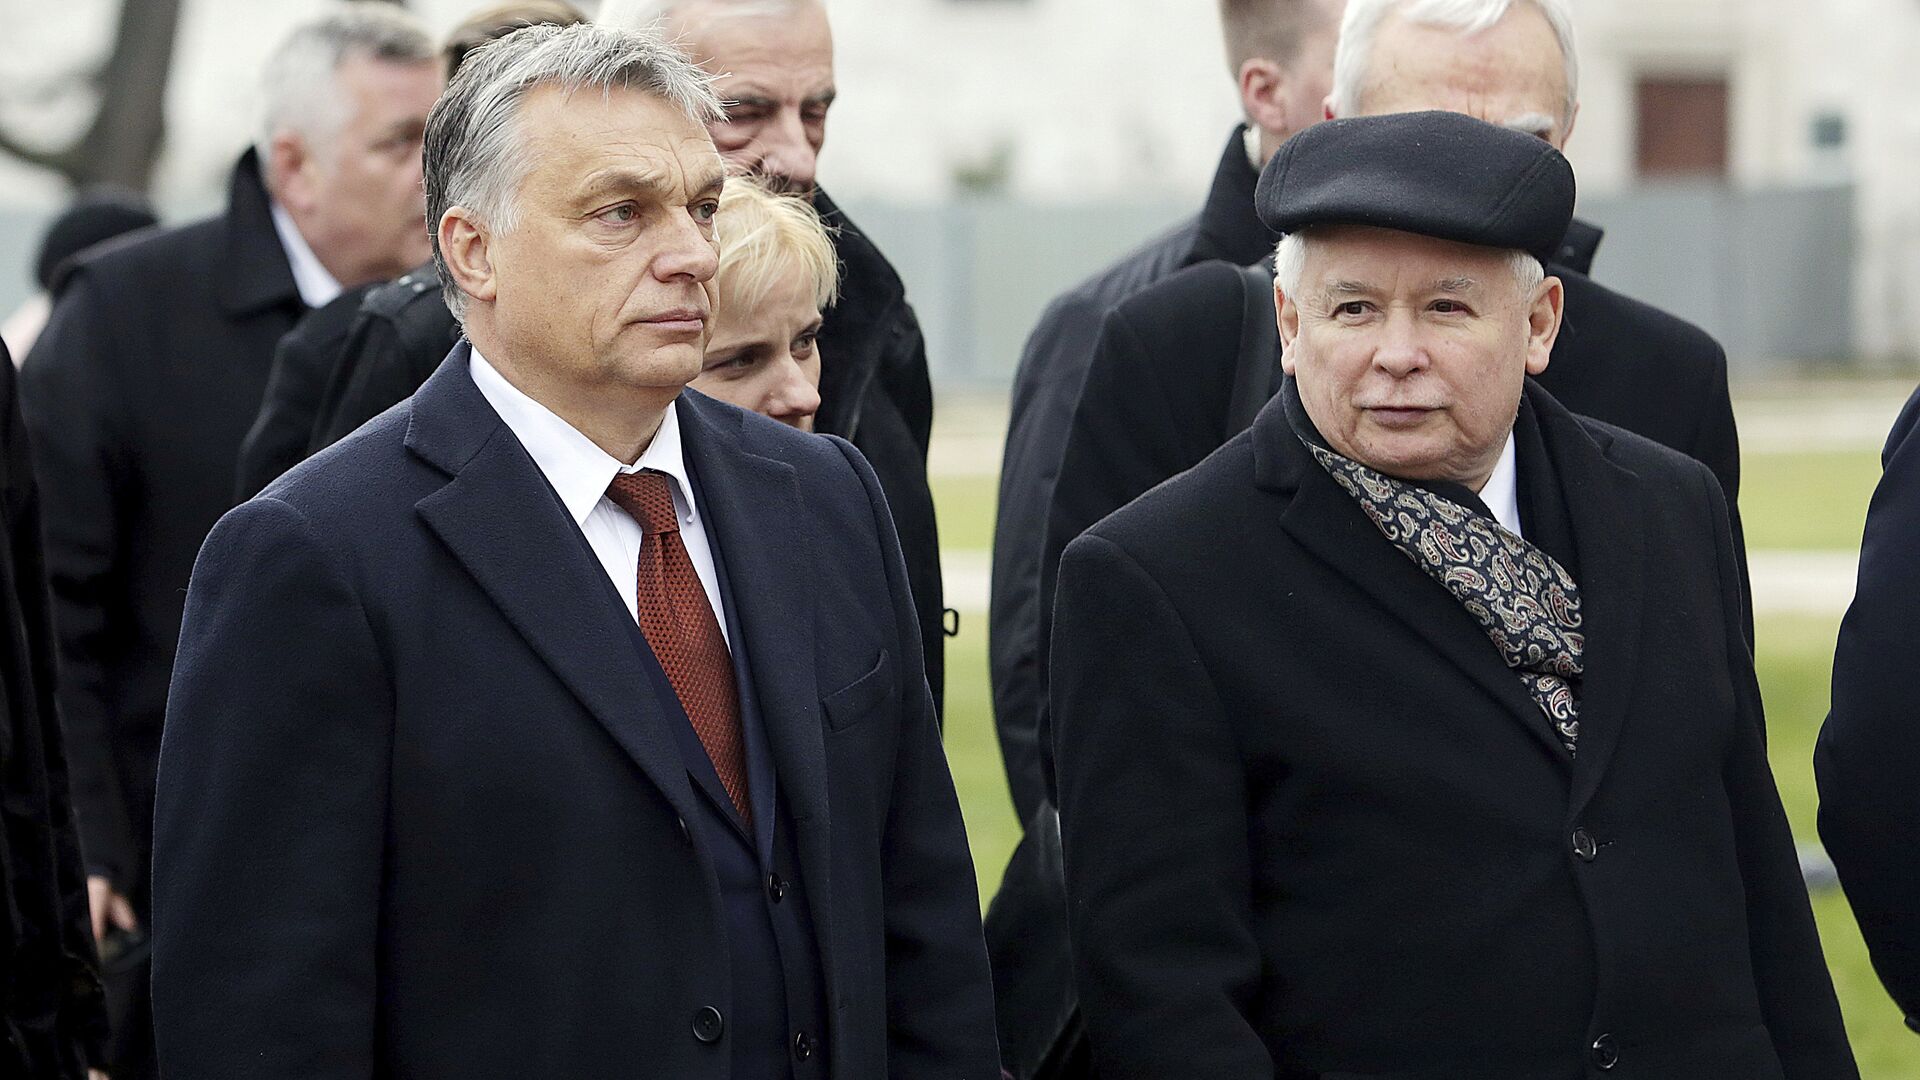 Виктор Орбан и Ярослав Качиньский в Кракове. 9 декабря 2016 года - ИноСМИ, 1920, 19.05.2023